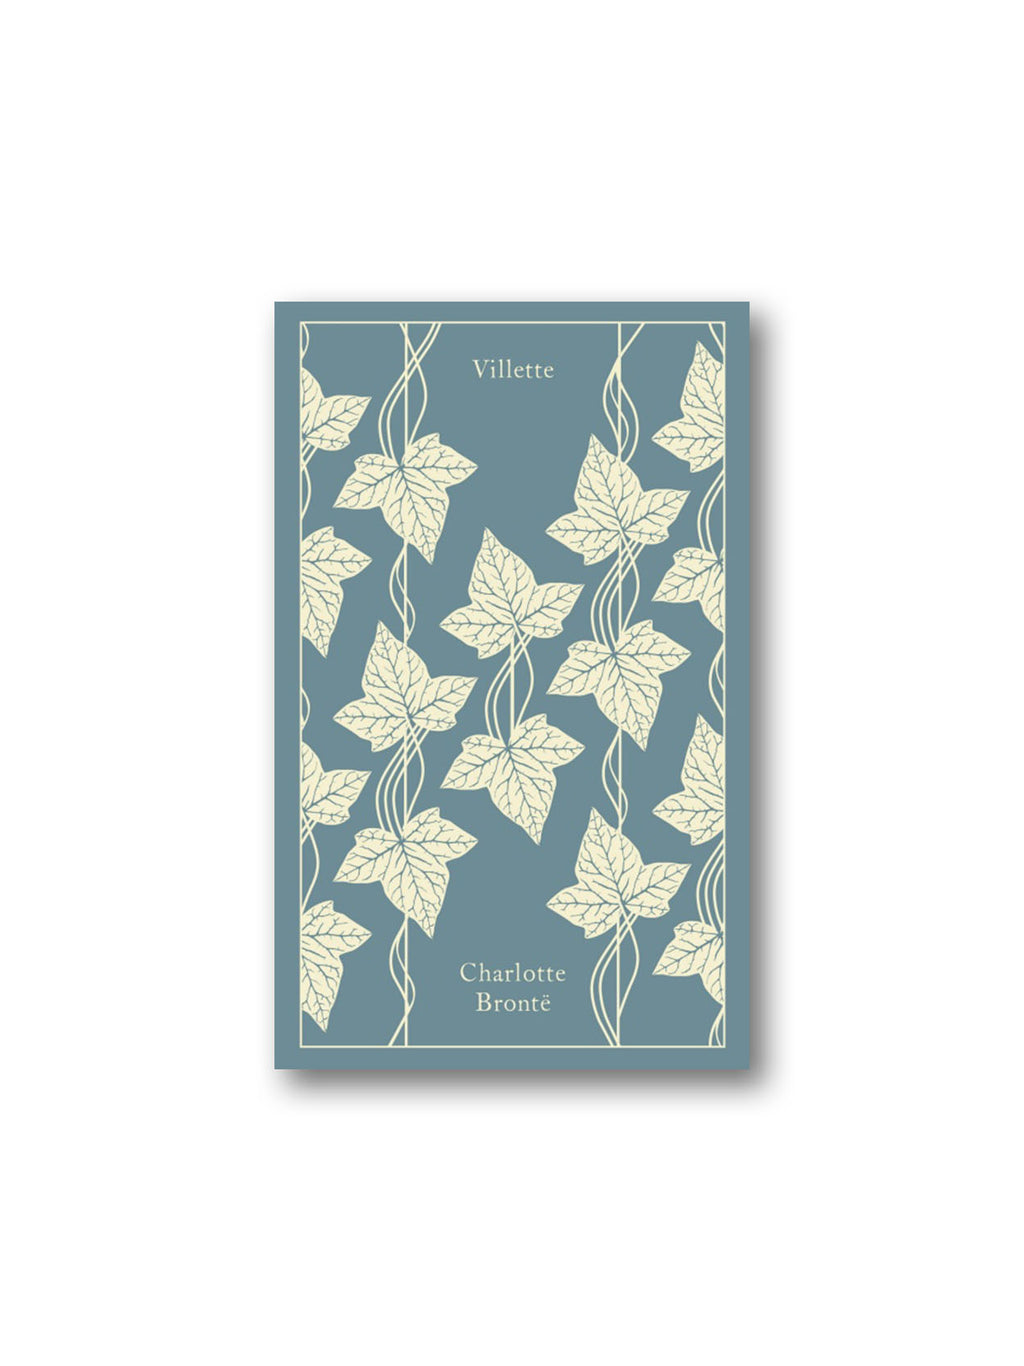 Villette - Penguin Clothbound Classics